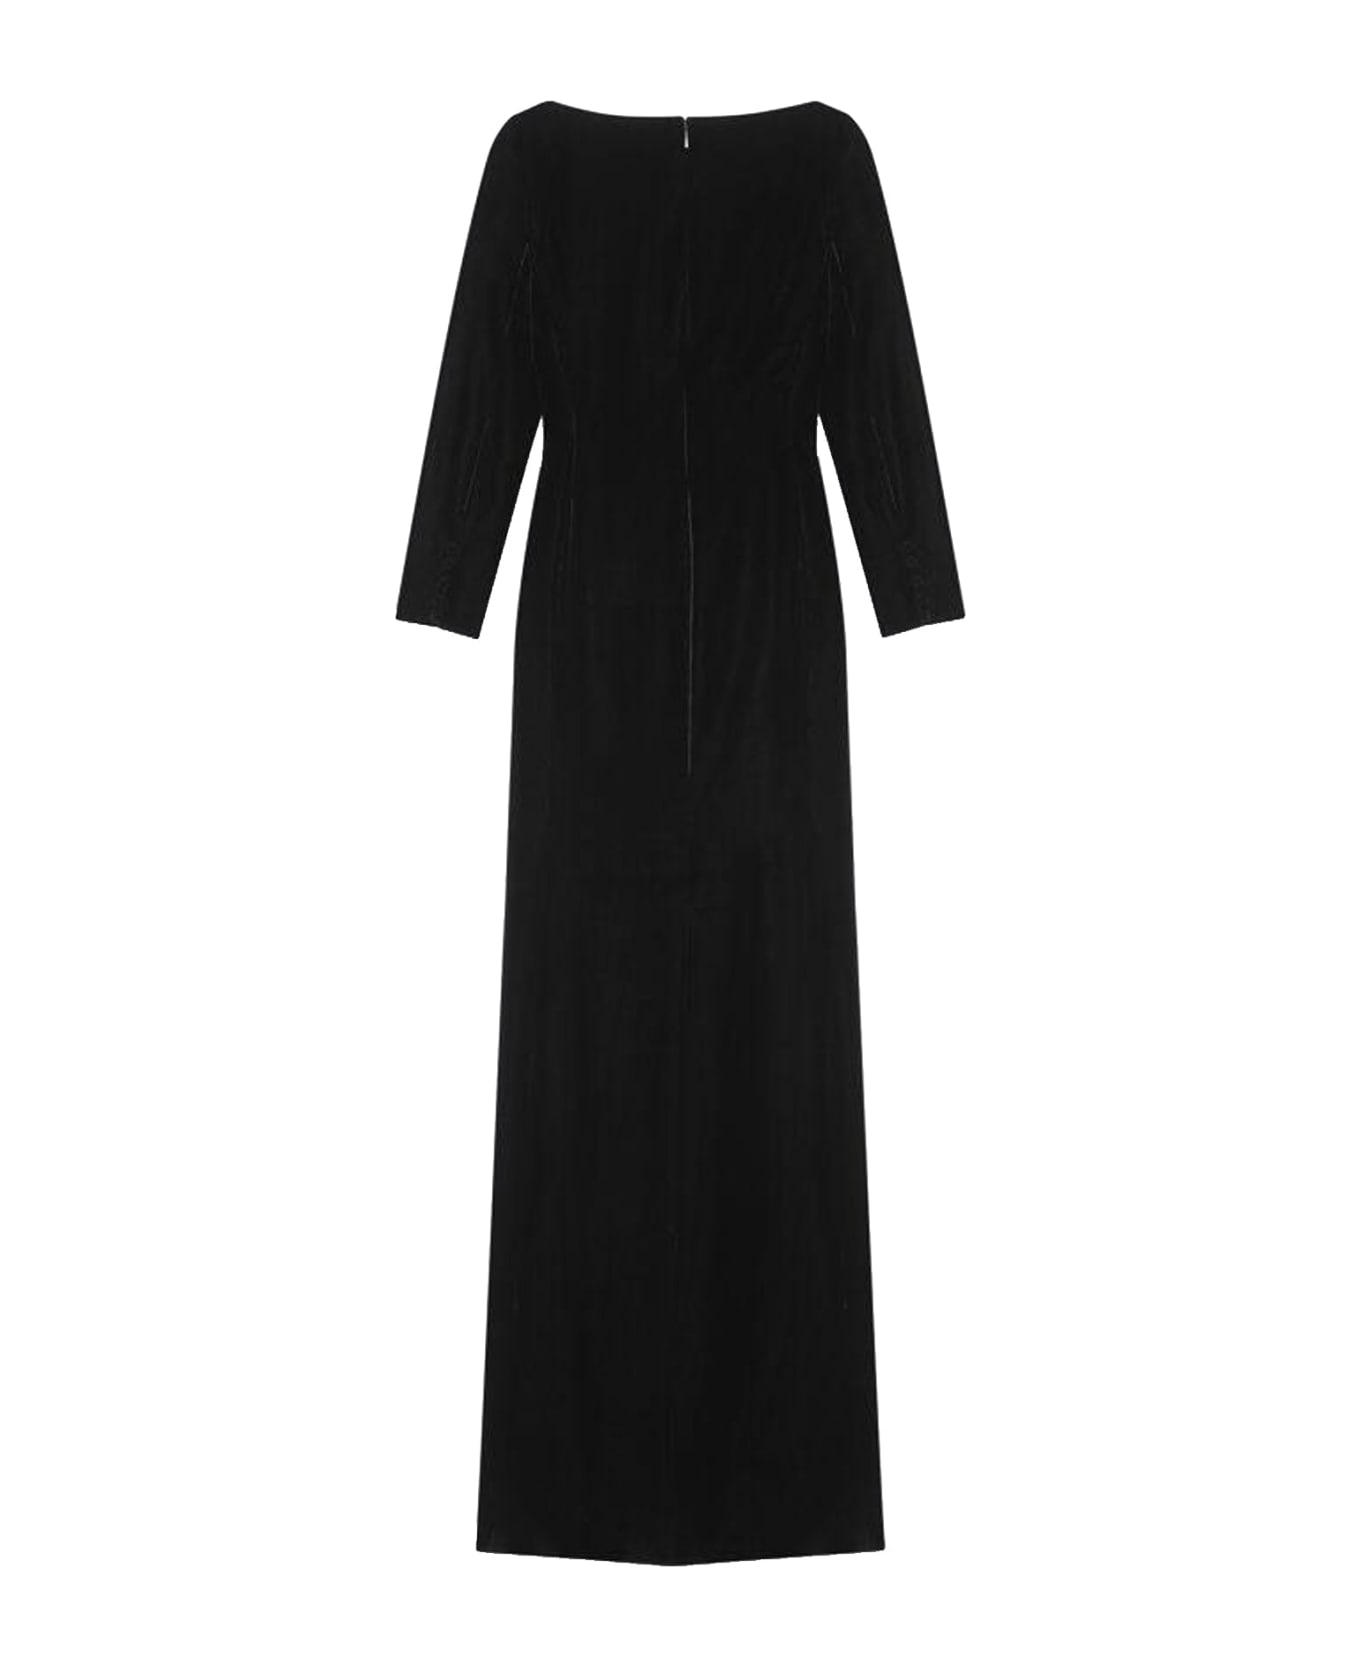 Saint Laurent Velvet Long Dress - Black